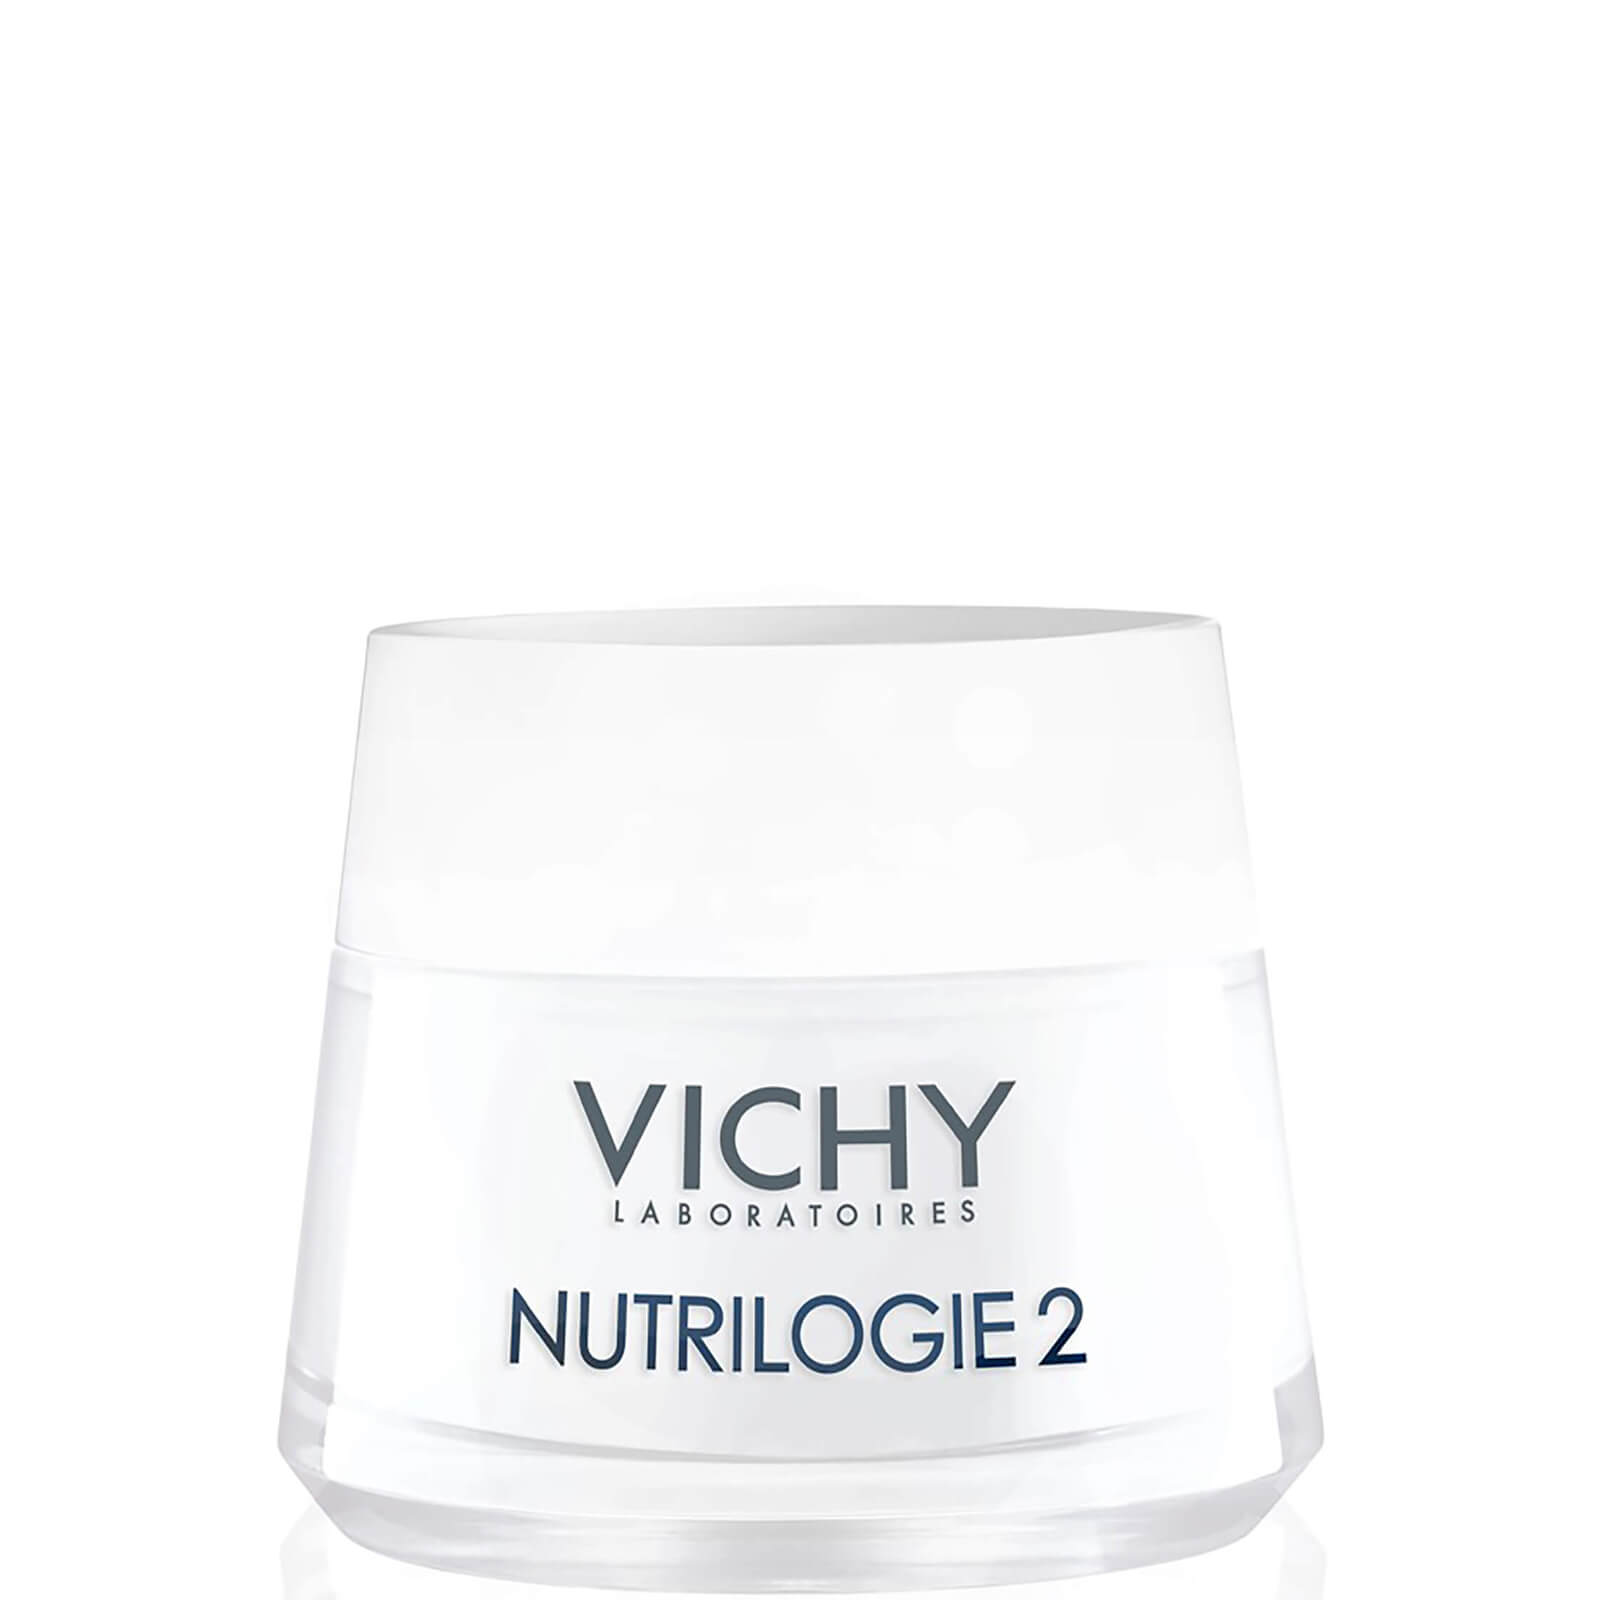 Vichy Nutrilogie 2 Intensivecreme für sehr trockene Haut 50ml